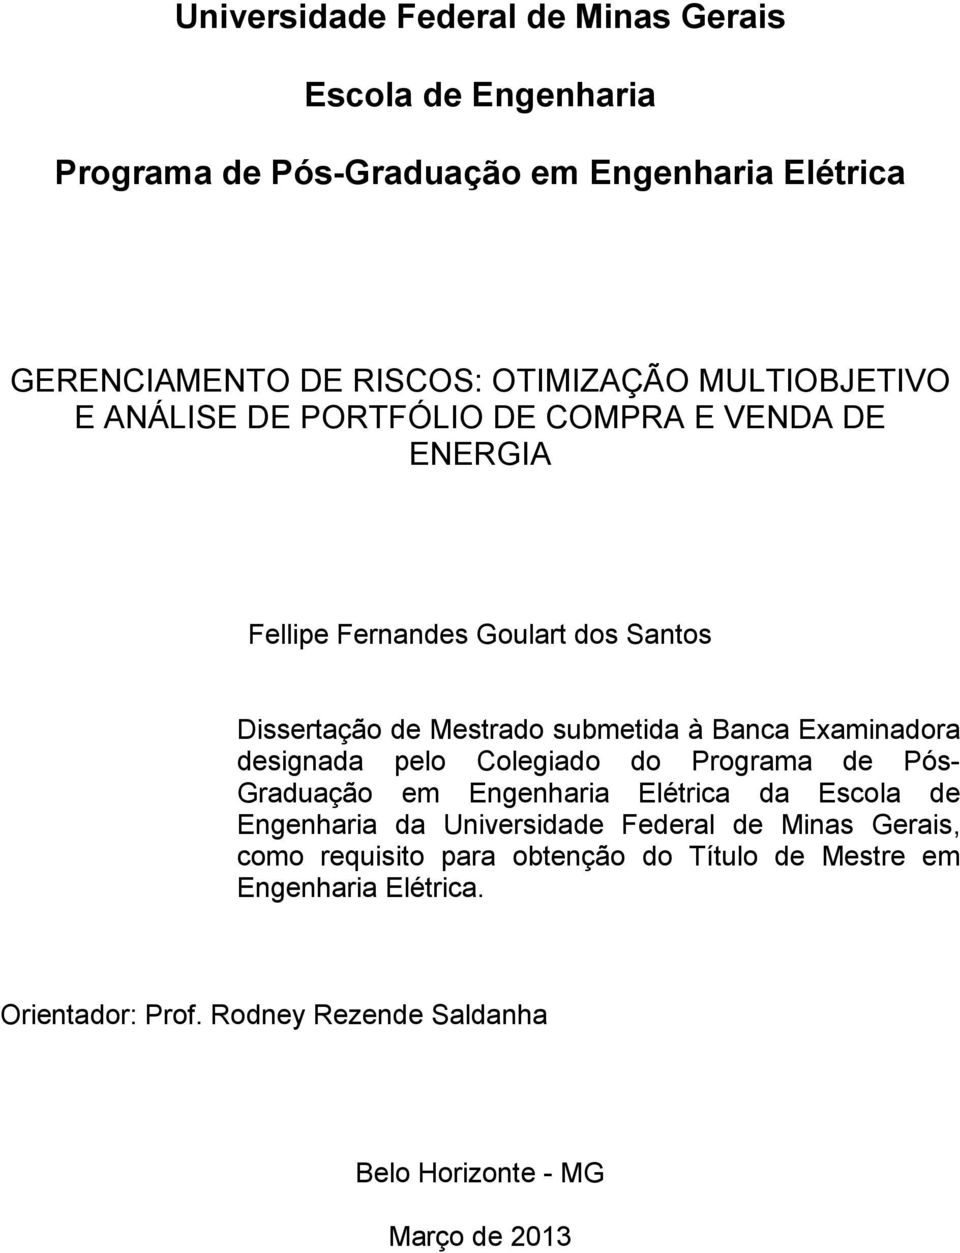 Examinadora designada pelo Colegiado do Programa de Pós- Graduação em Engenharia Elétrica da Escola de Engenharia da Universidade Federal de Minas